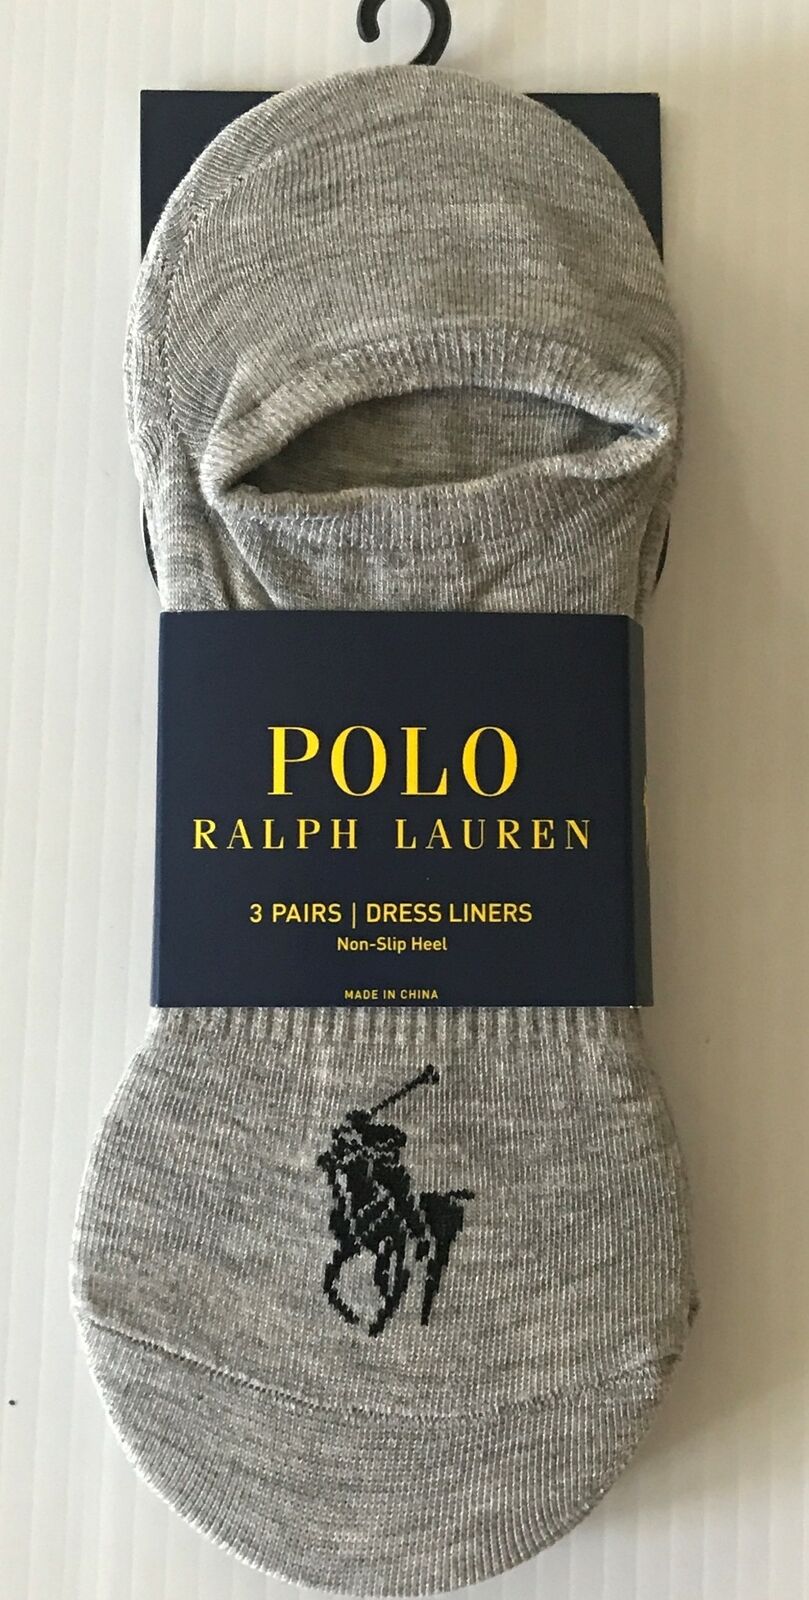 Polo Ralph Lauren 3 Pair No Show Dress Liners Socks Men's 6-12 Shoe Size